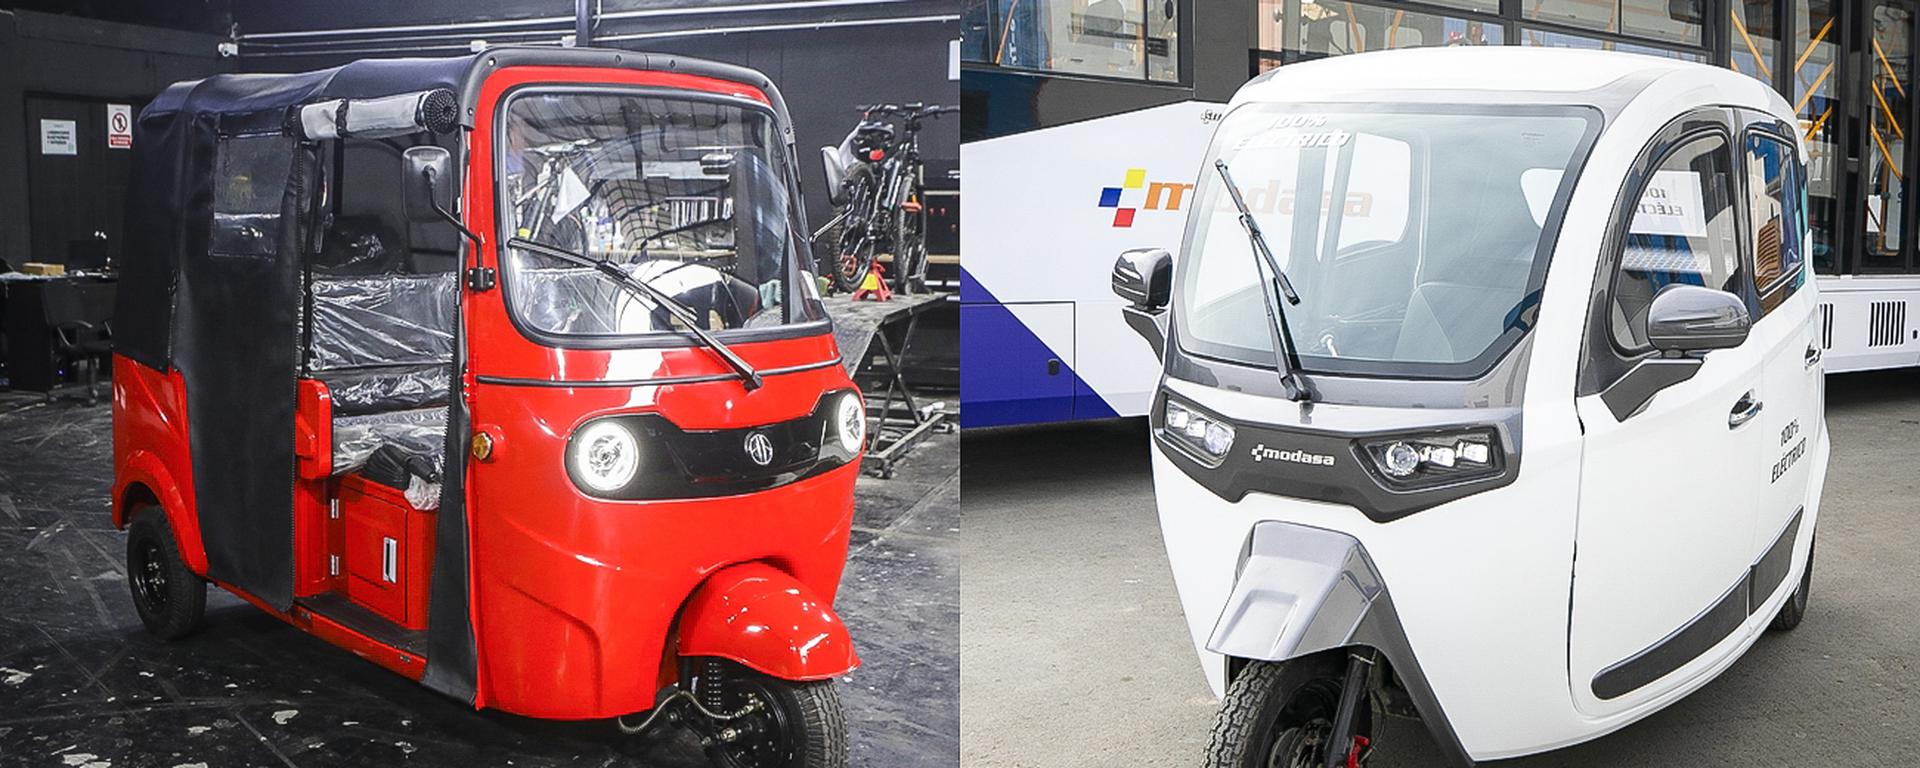 Cómo son los mototaxis eléctricos: ya circulan en nuestras calles y hay uno de fabricación peruana | VIDEO